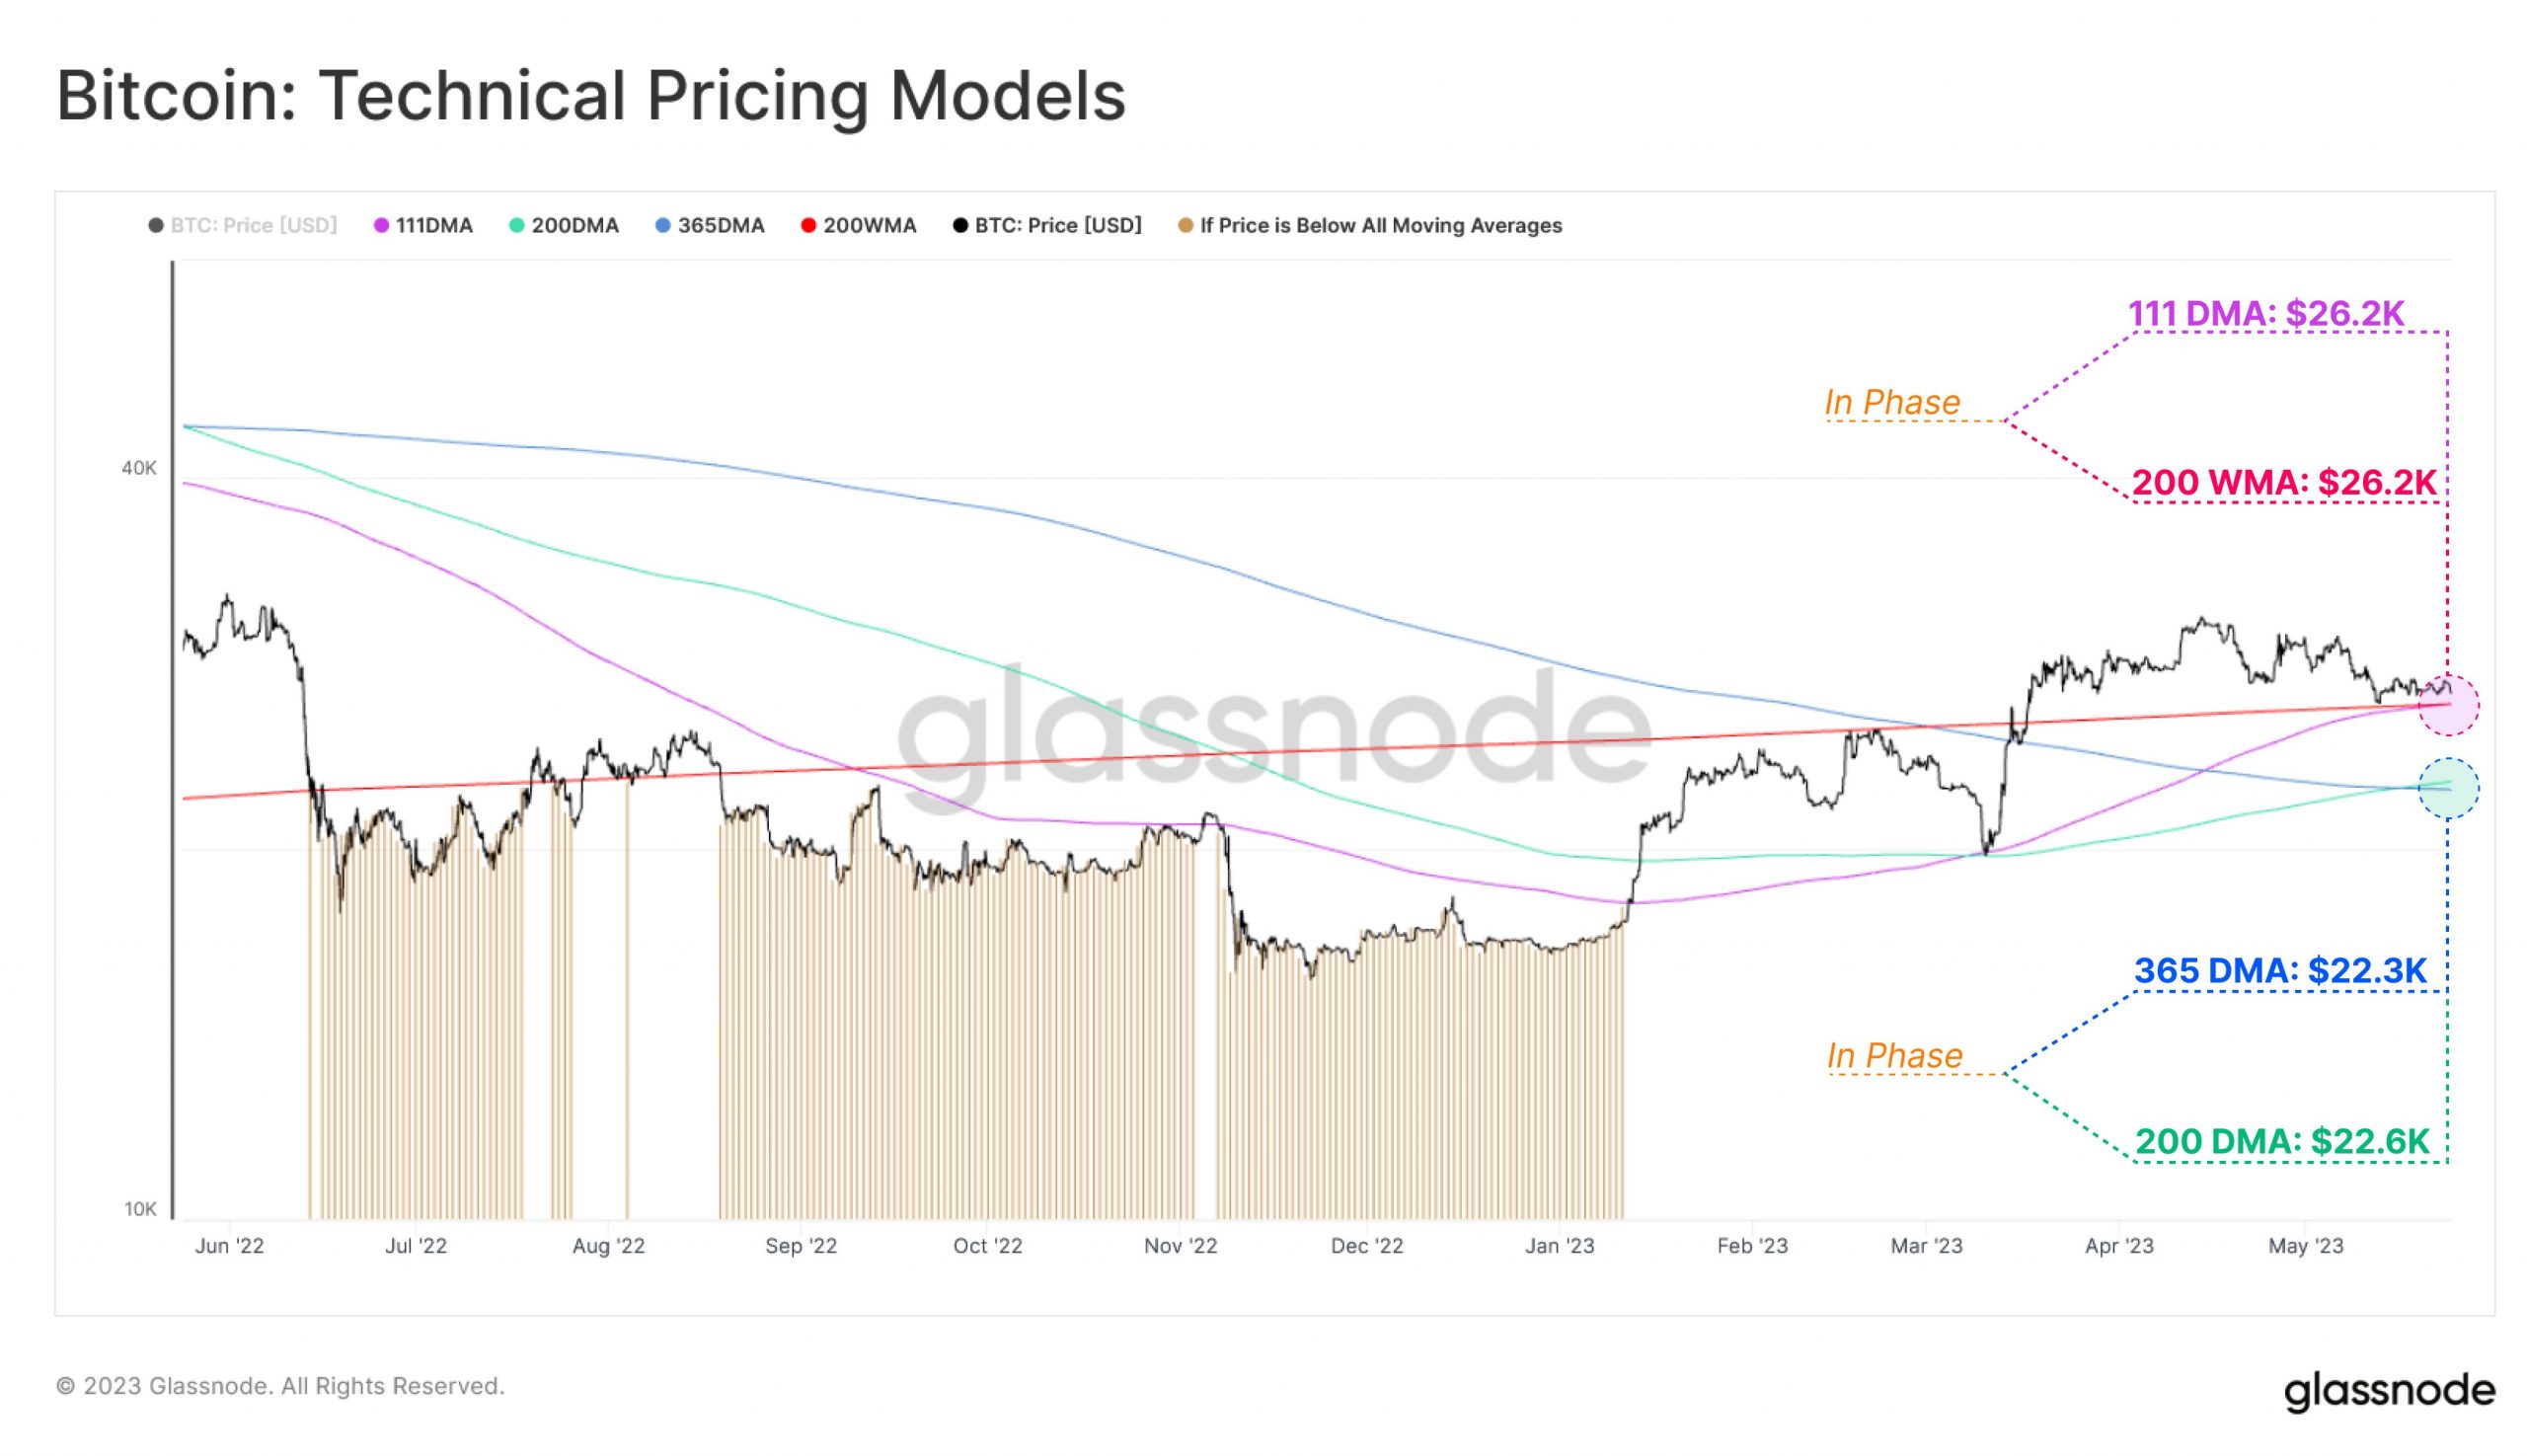 Технические модели ценообразования Биткоин